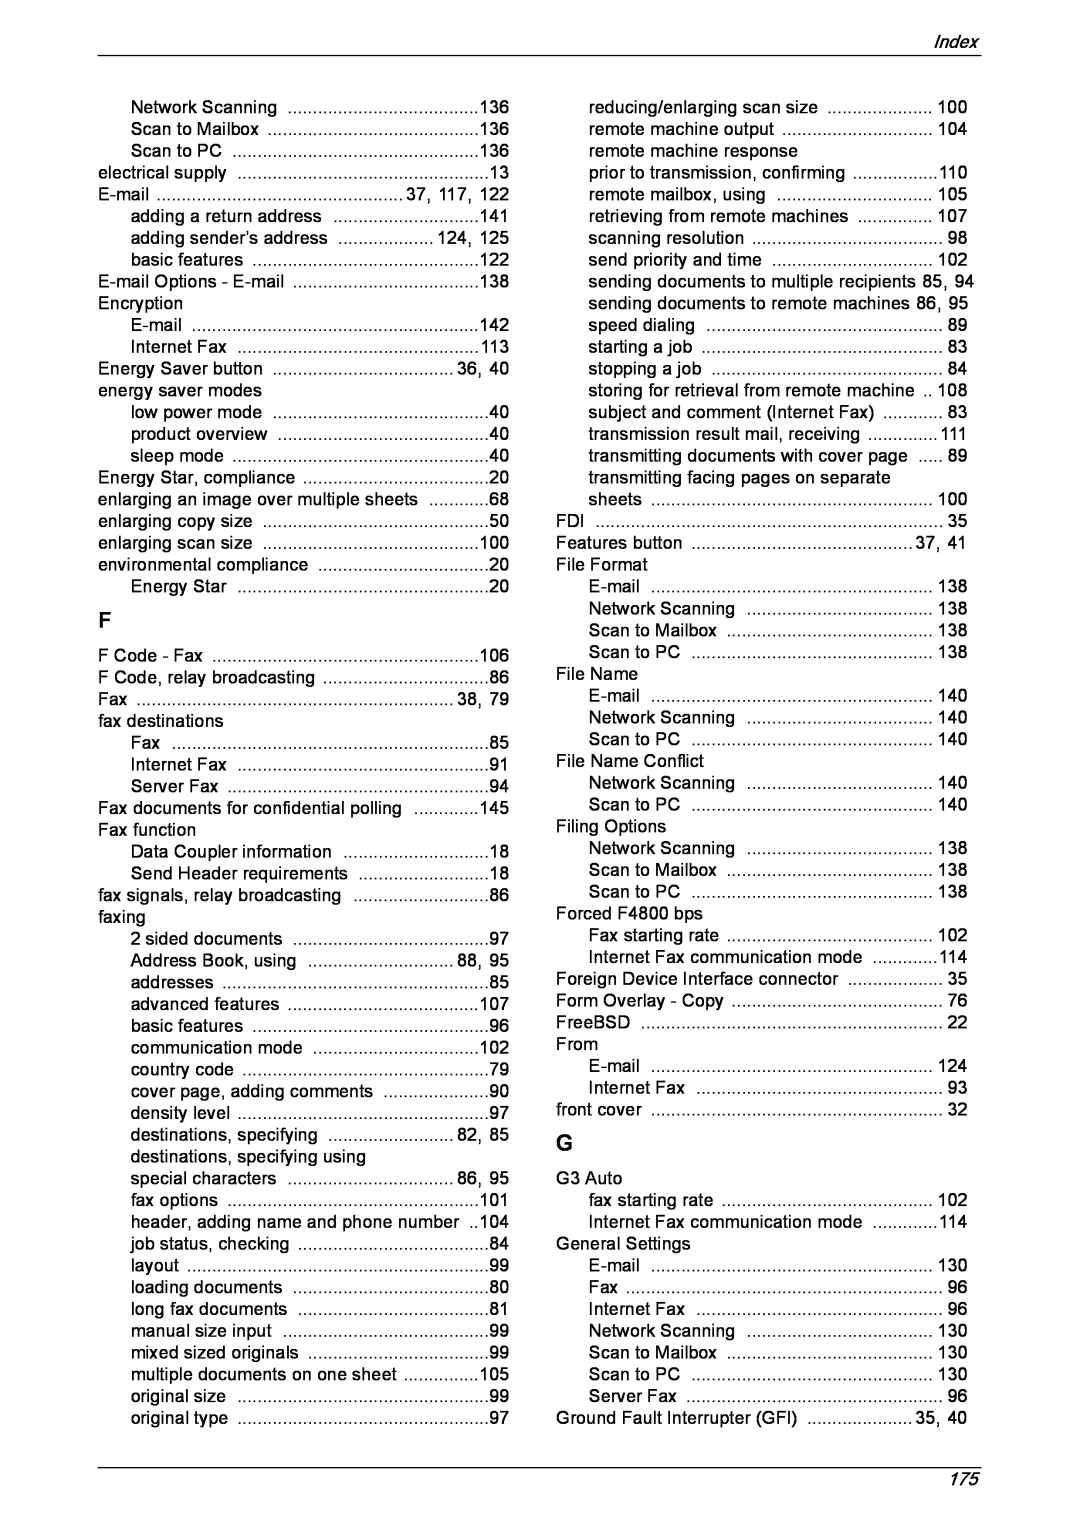 Xerox 5230 manual Index 